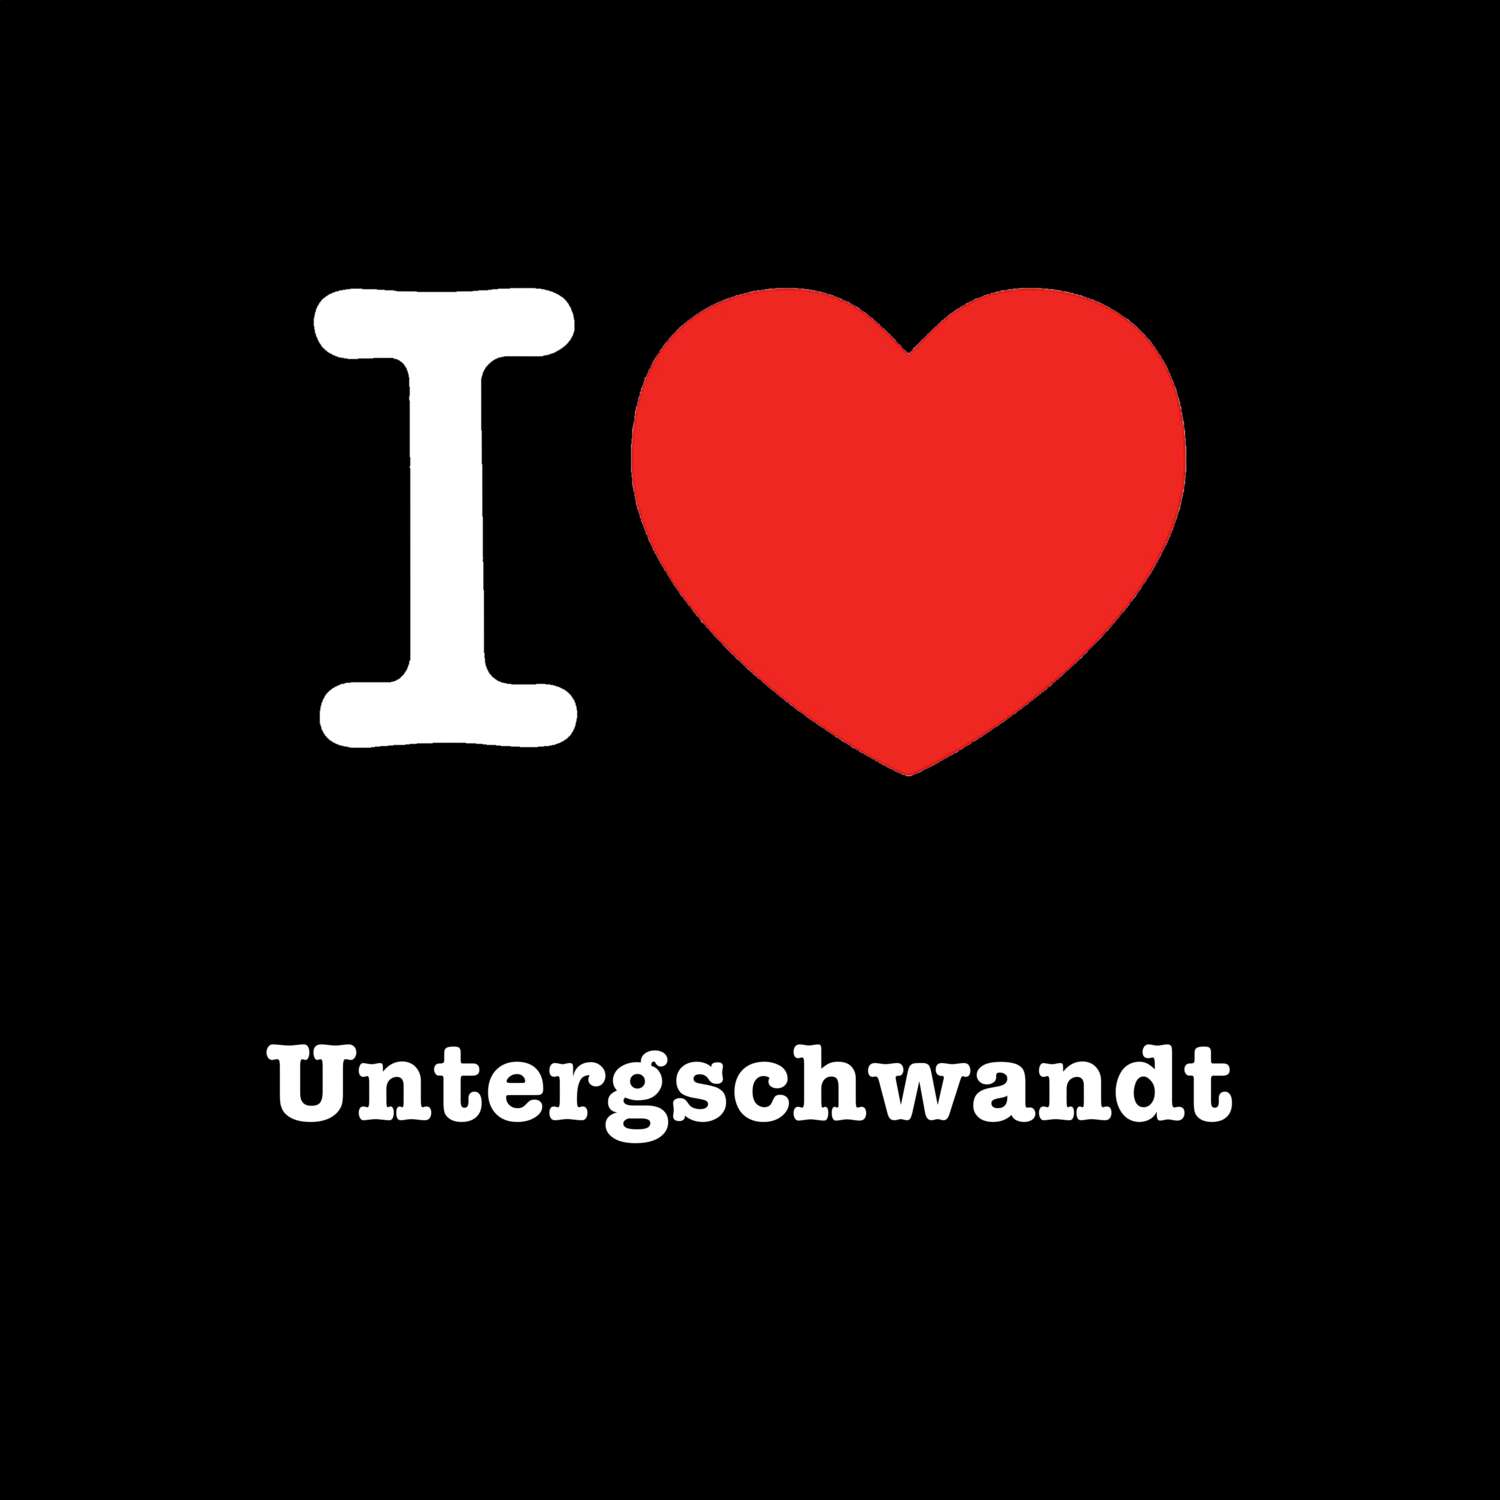 Untergschwandt T-Shirt »I love«